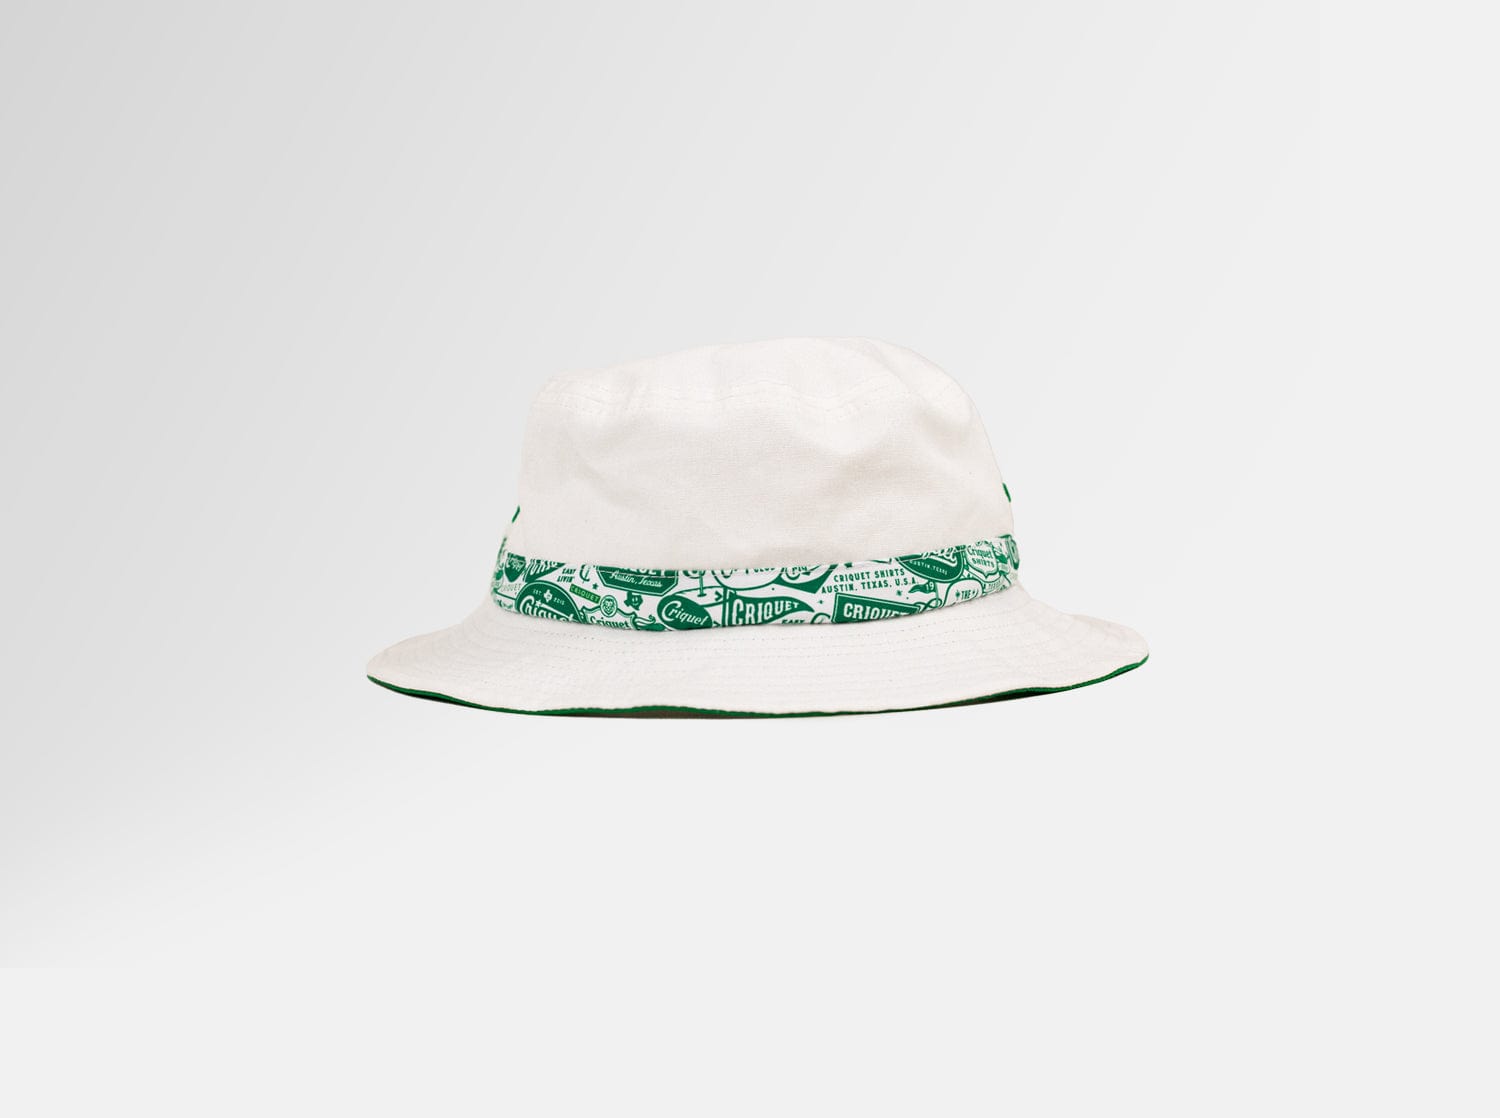 Criquet x Imperial Bucket Hat - Criquet Ribbon - White